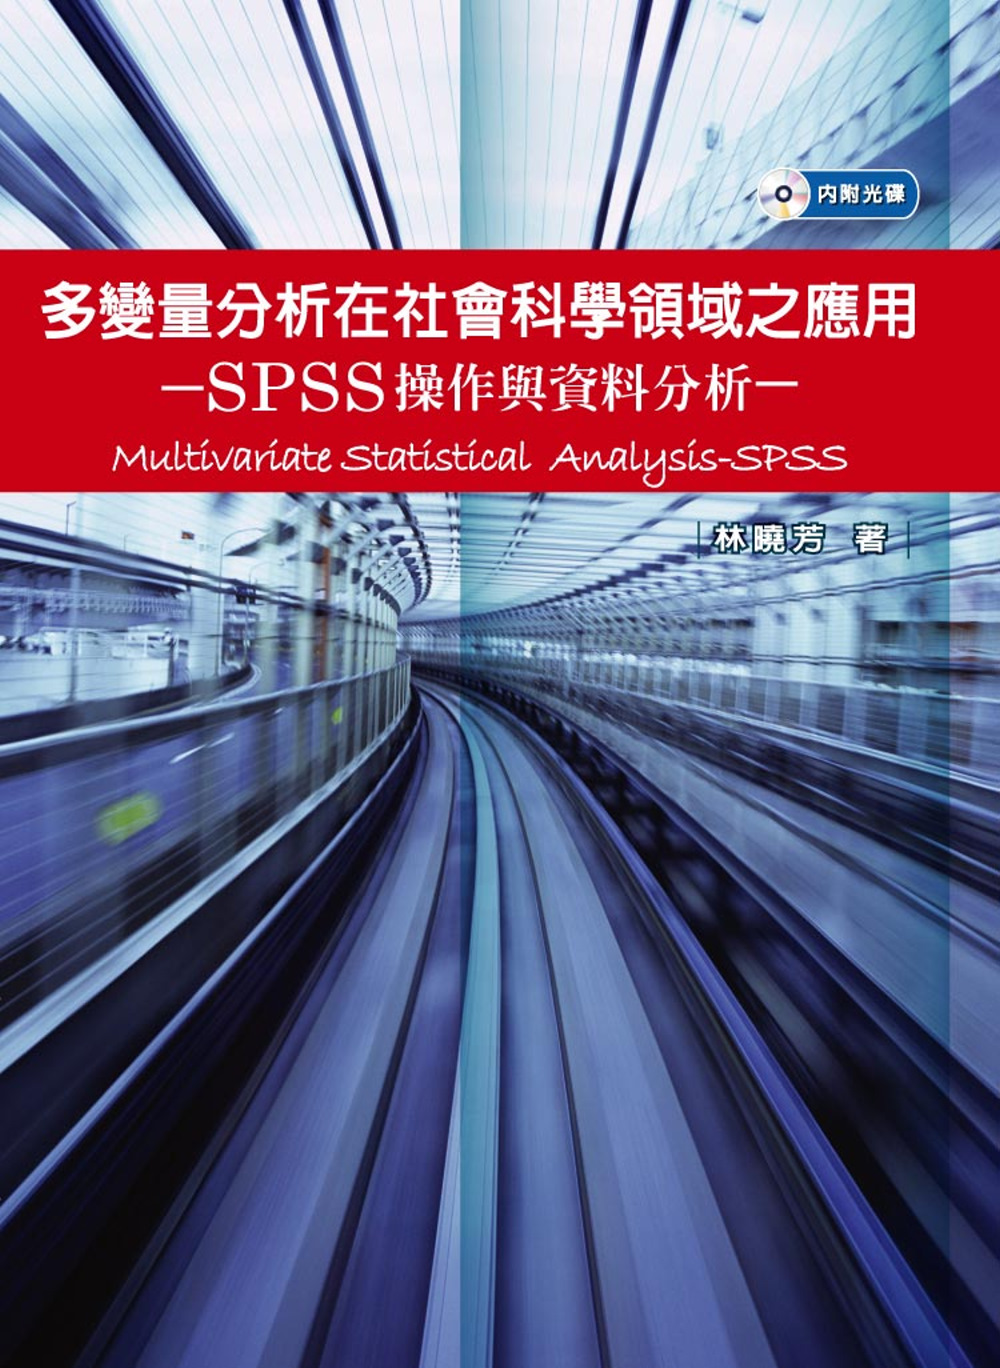 多變量分析在社會科學領域之應用-SPSS操作與資料分析(附光碟)